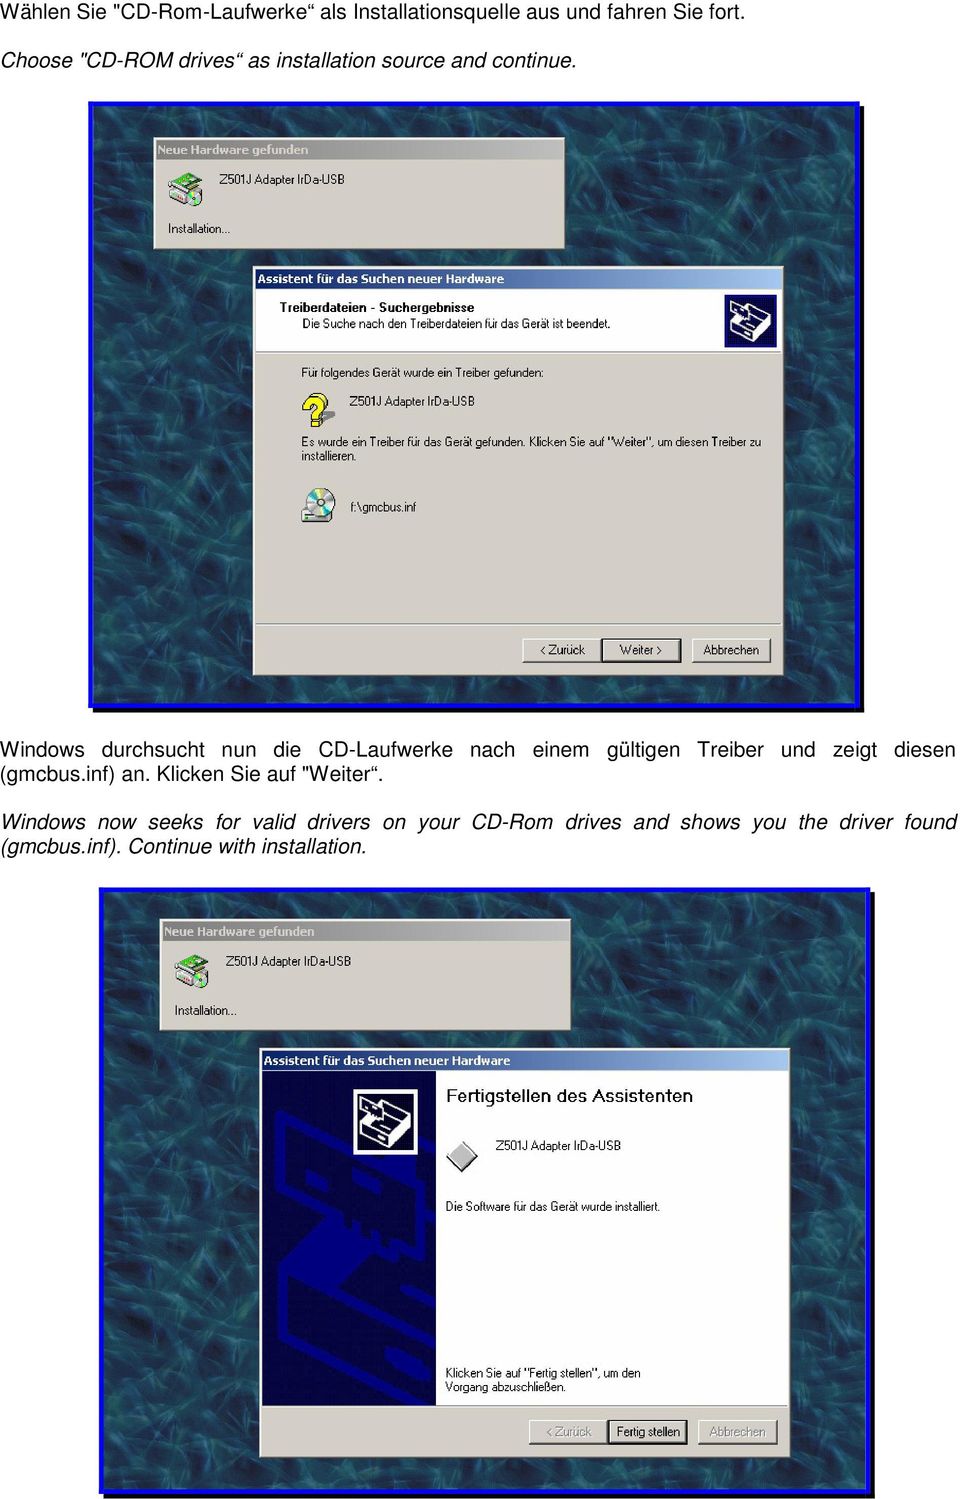 Windows durchsucht nun die CD-Laufwerke nach einem gültigen Treiber und zeigt diesen (gmcbus.